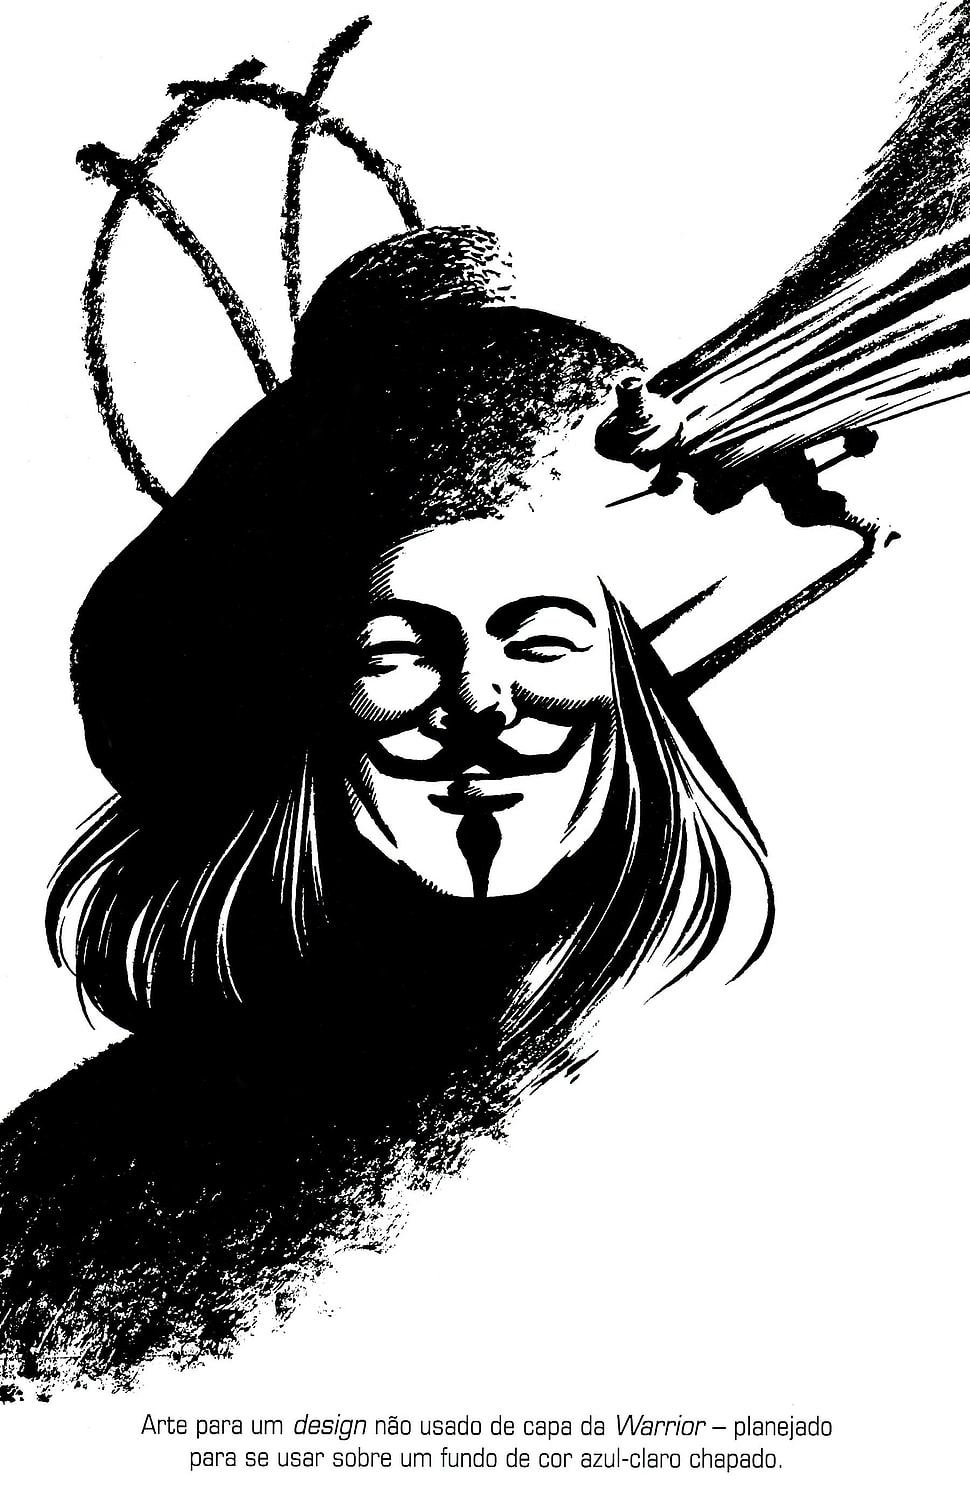 Fawkes Guy poster, David Lloyd, Alan Moore, V for Vendetta, V HD wallpaper